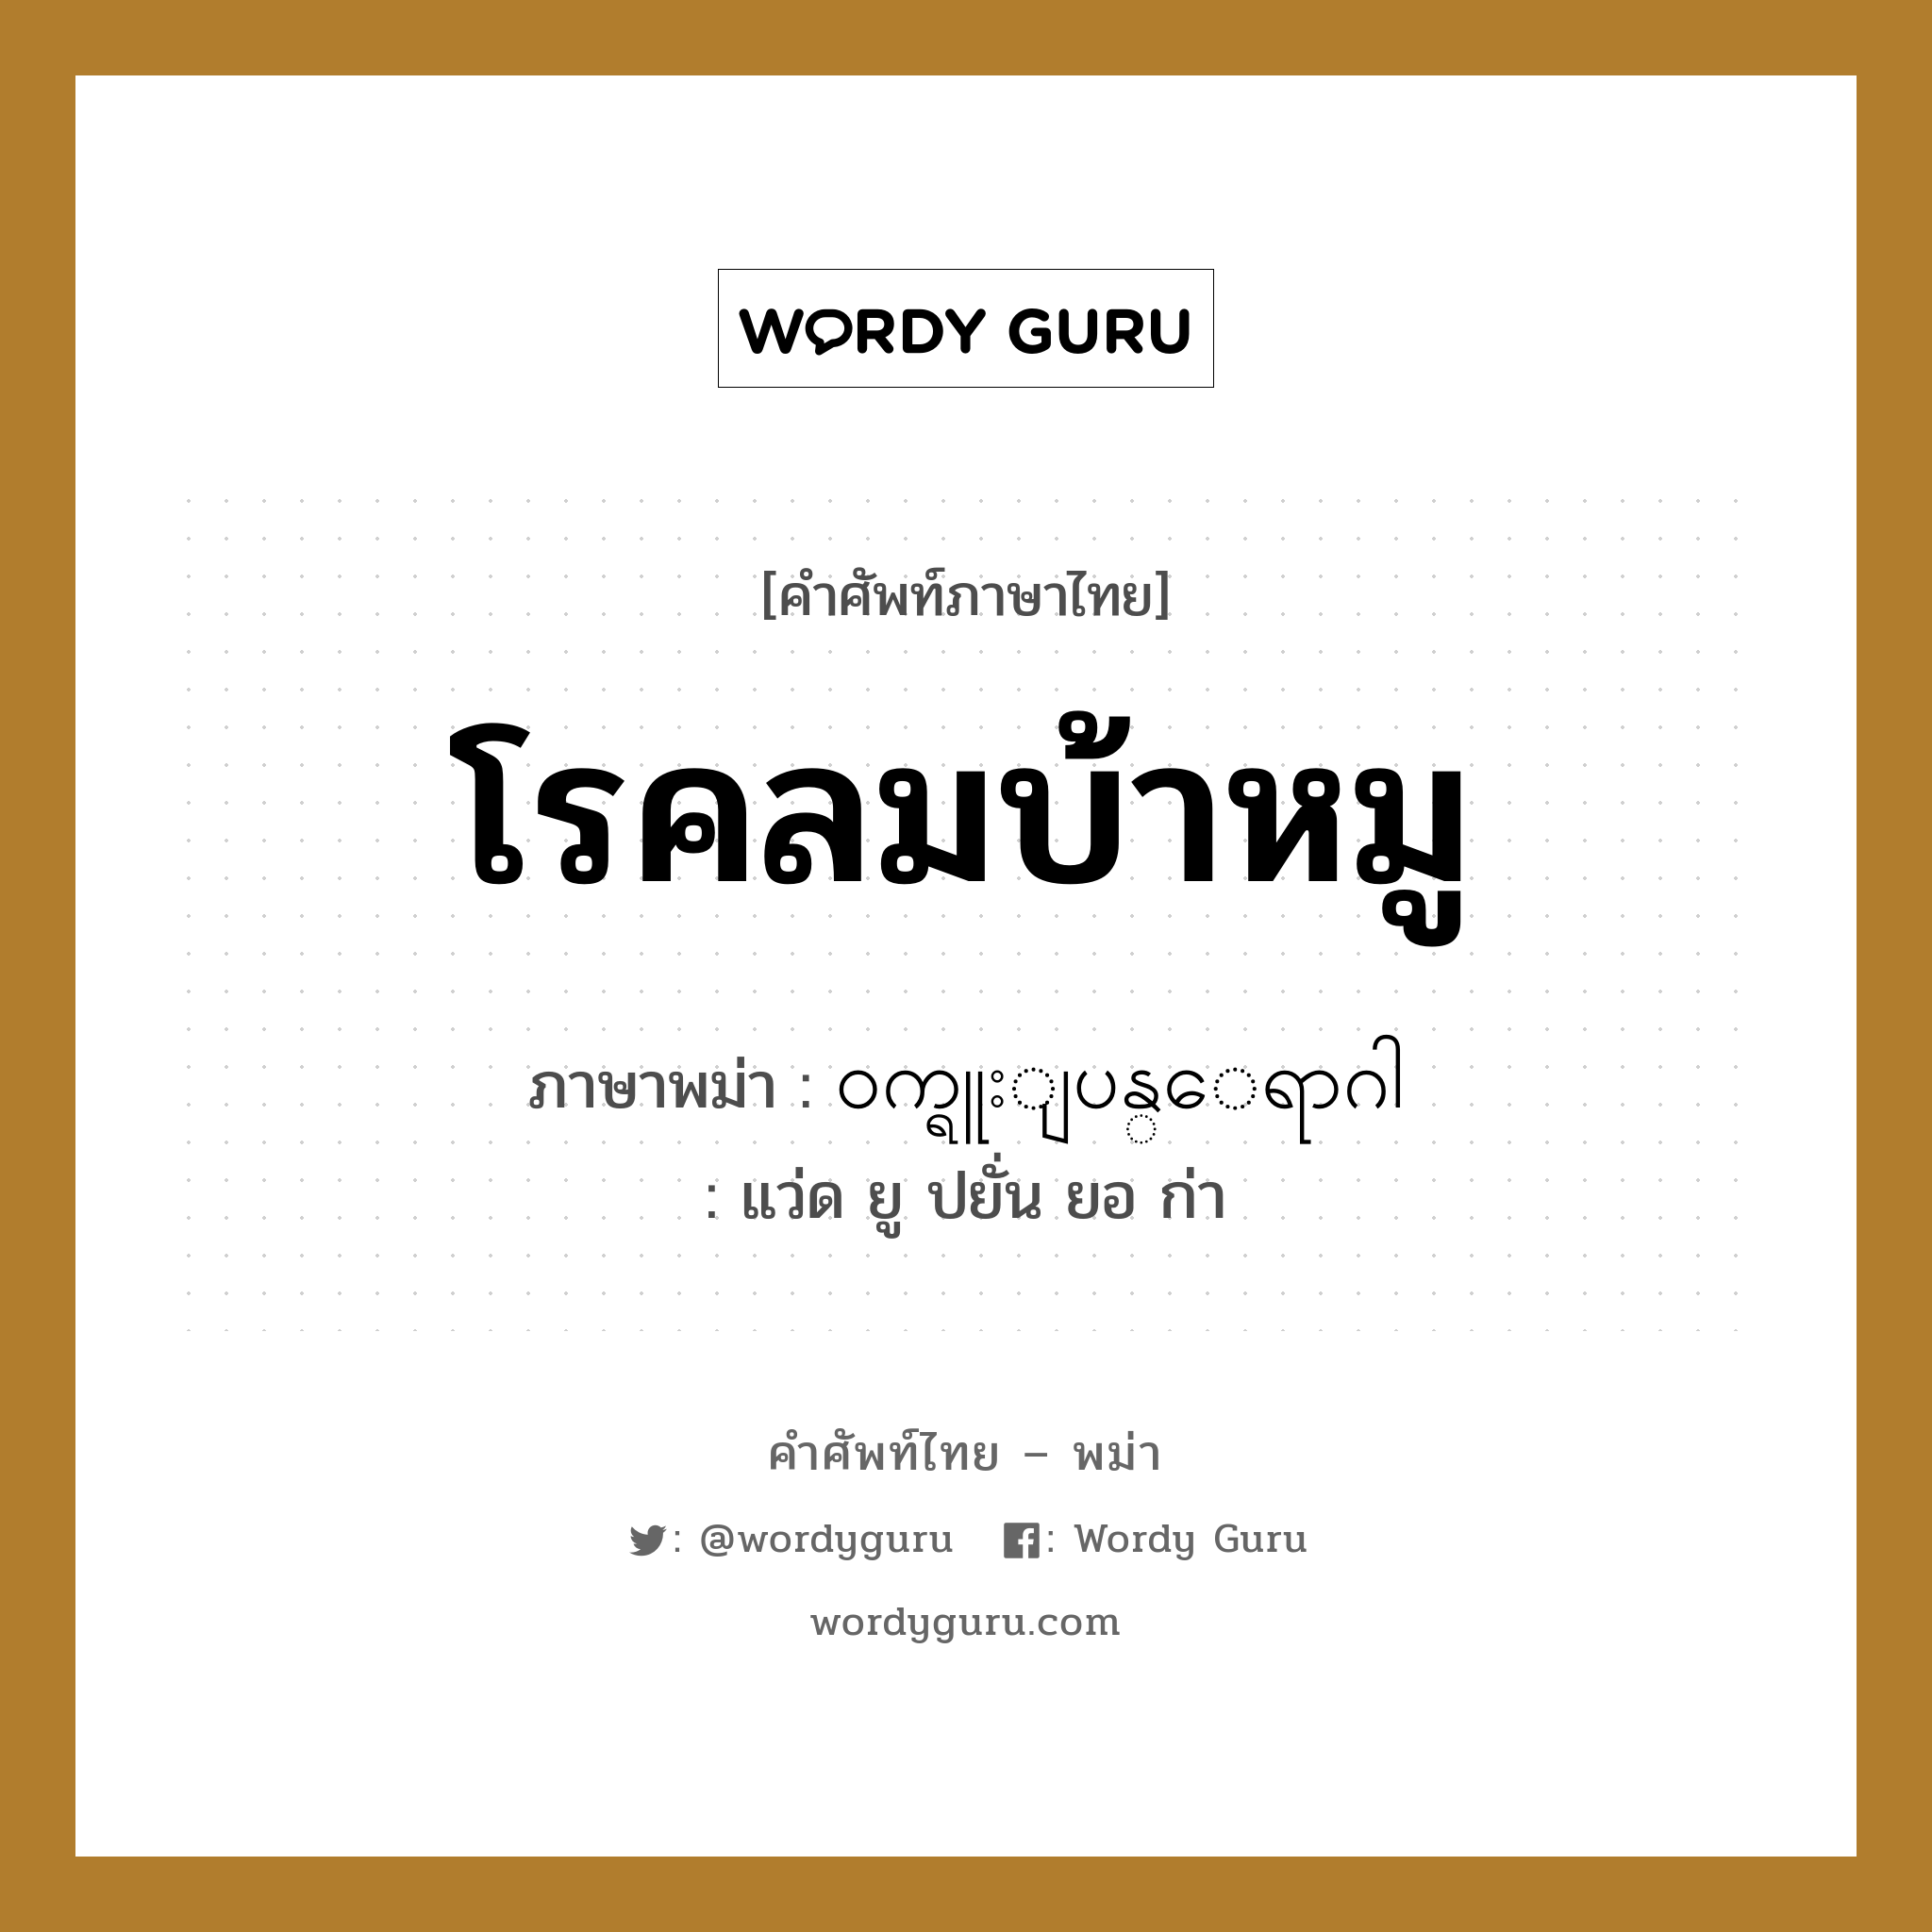 ၀က္ရူးျပန္ေရာဂါ ภาษาไทย?, คำศัพท์ภาษาไทย - พม่า ၀က္ရူးျပန္ေရာဂါ ภาษาพม่า โรคลมบ้าหมู หมวด หมวดโรคและยารักษา แว่ด ยู ปยั่น ยอ ก่า หมวด หมวดโรคและยารักษา